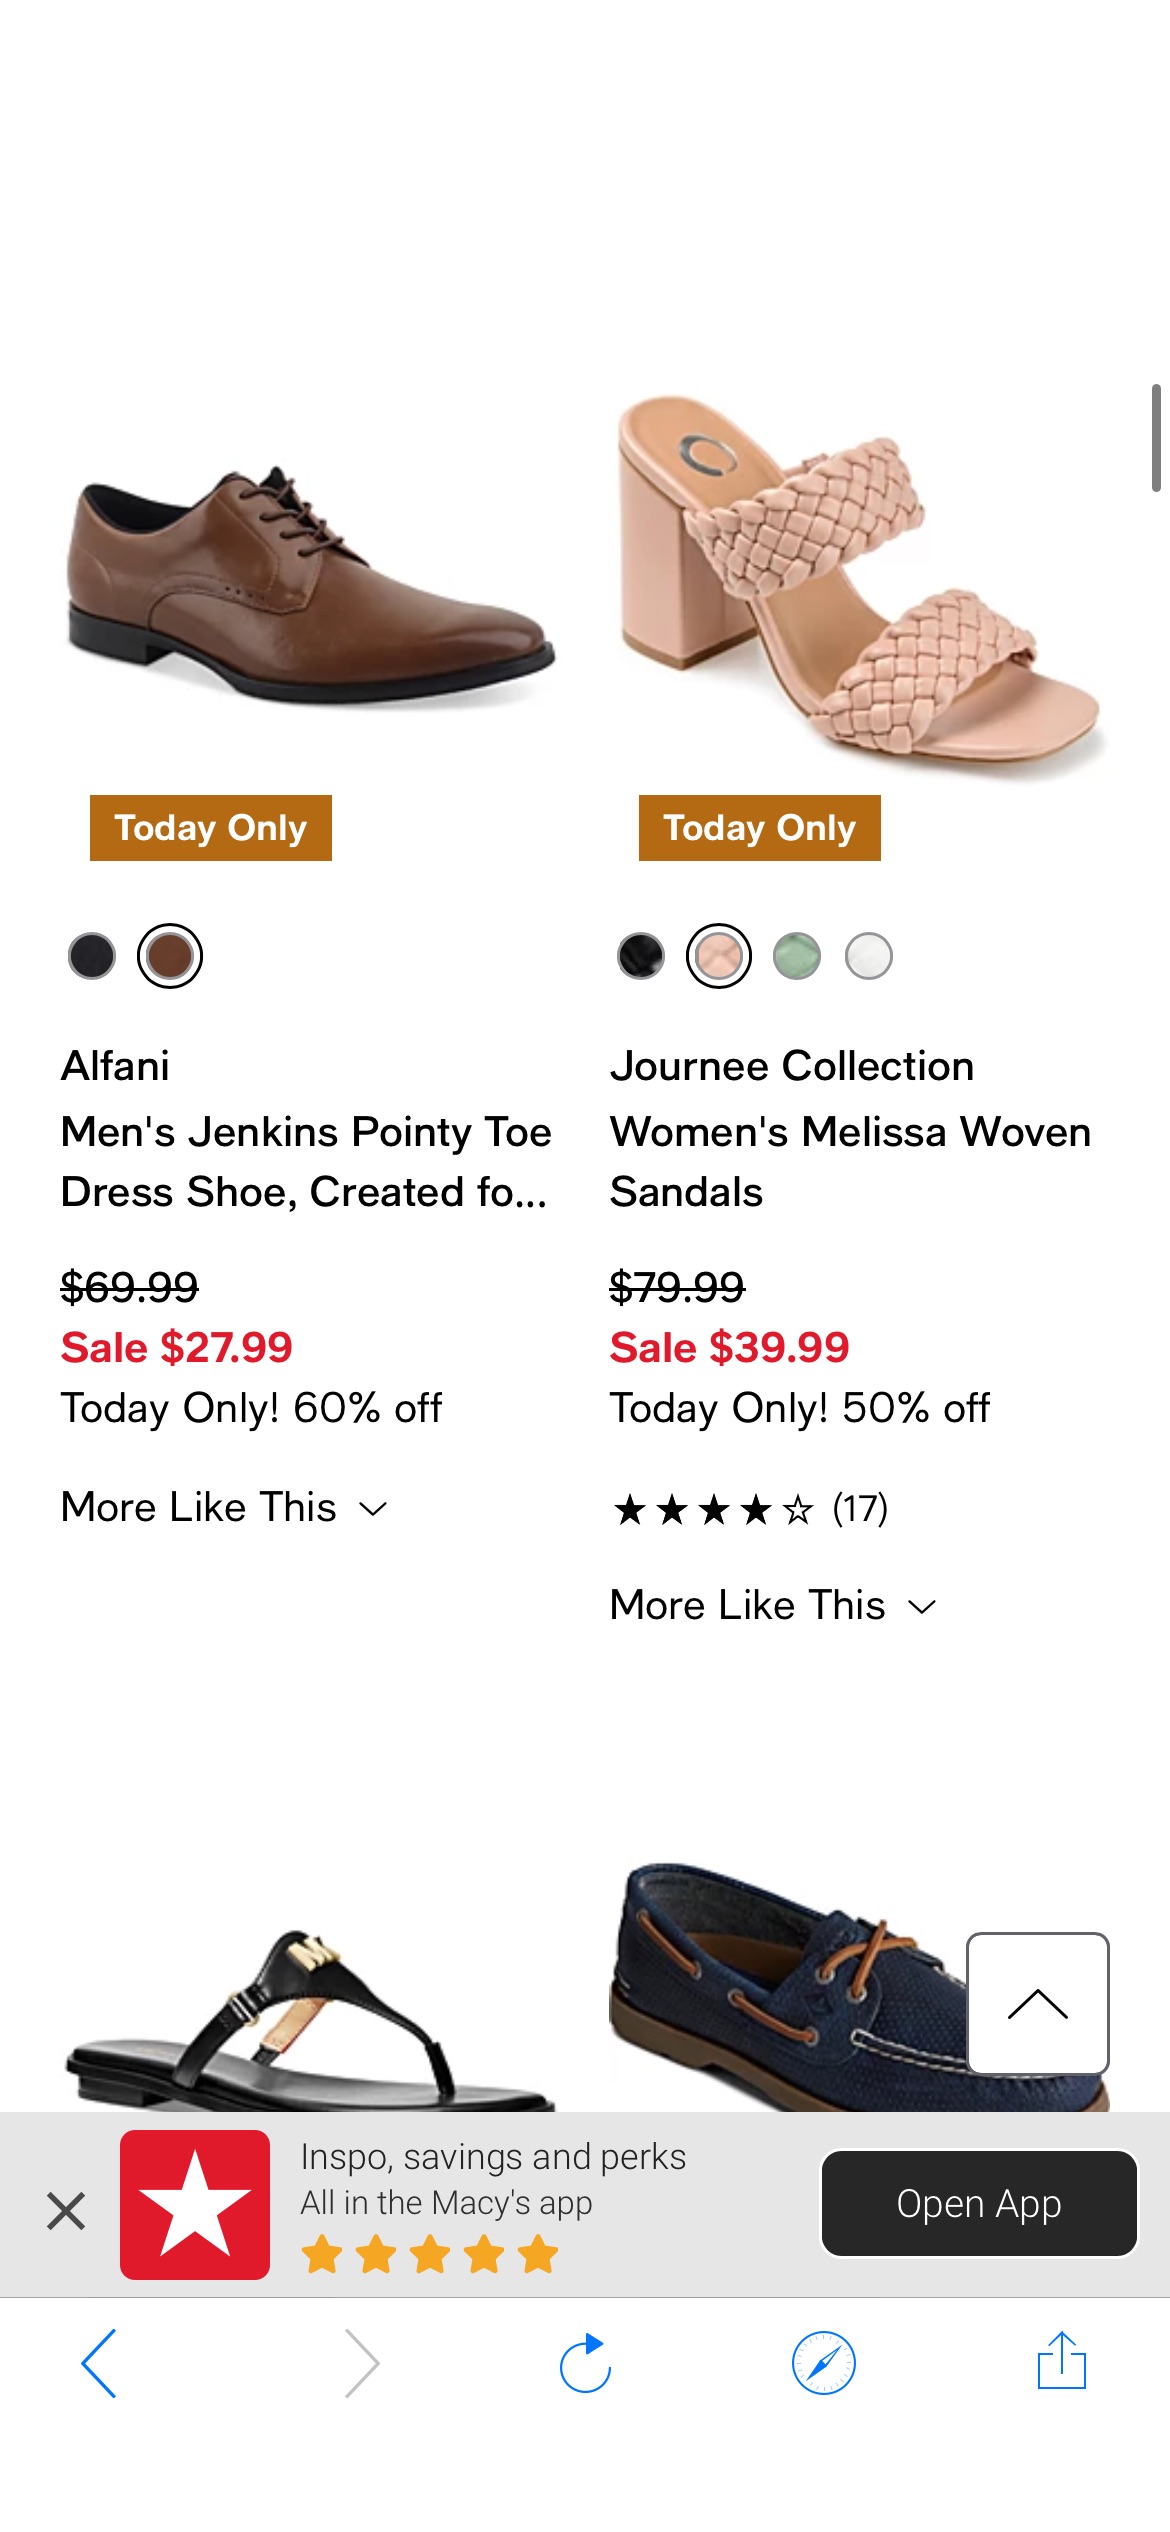 Sale - Today Only! Flash Sale - Macy's 梅西百货：鞋子限时促销，仅限在线：50-65%的折扣今晚结束！立即购物